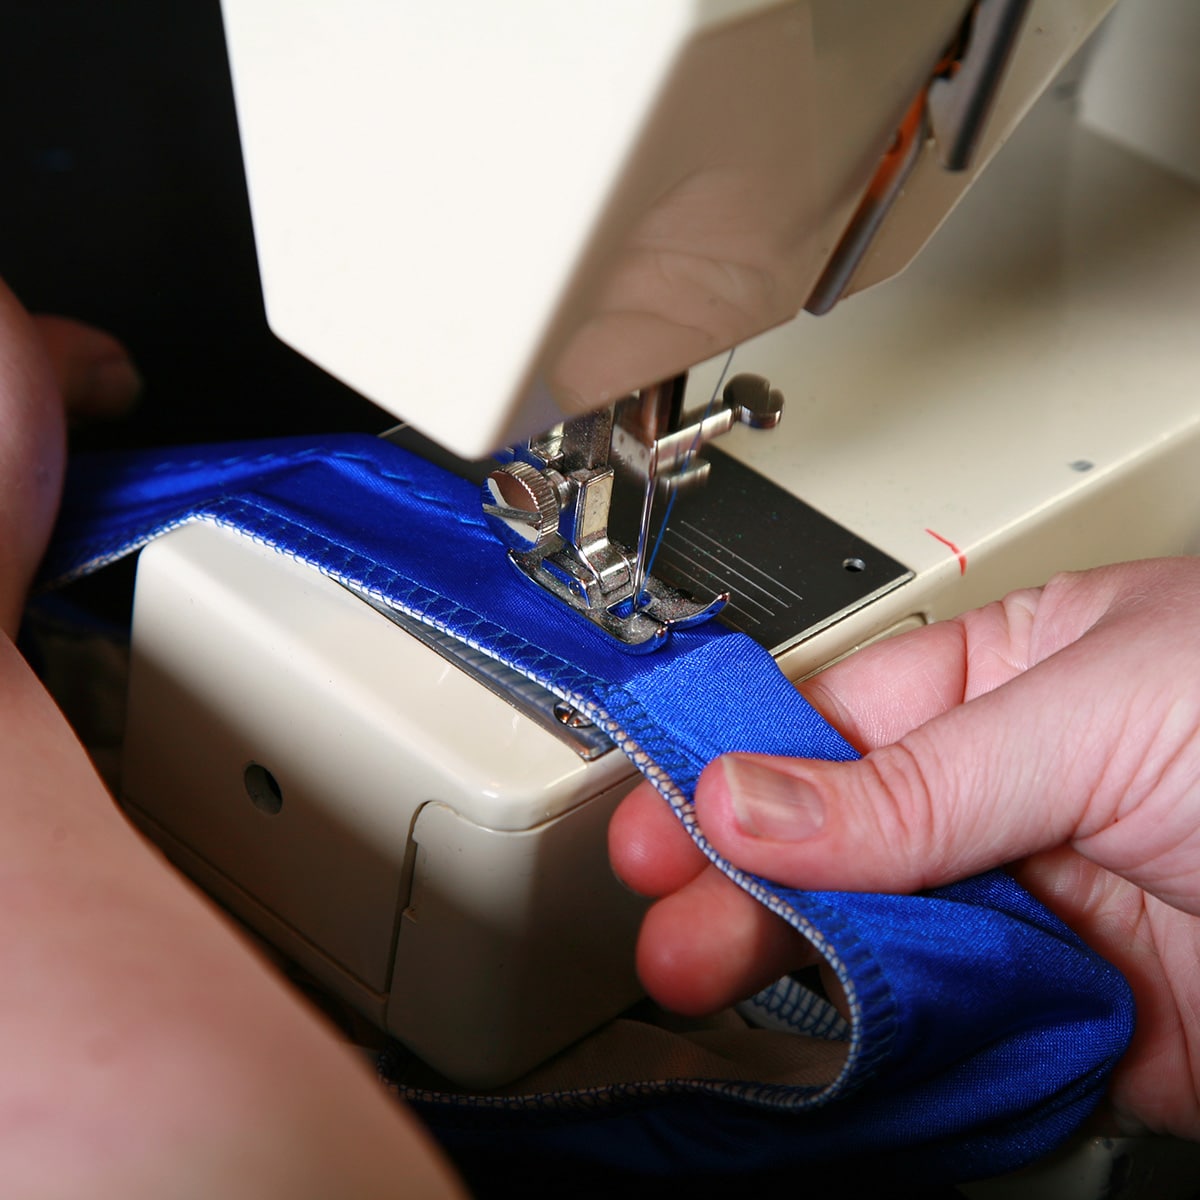 A blue bikini bottom being guided through a sewing machine.